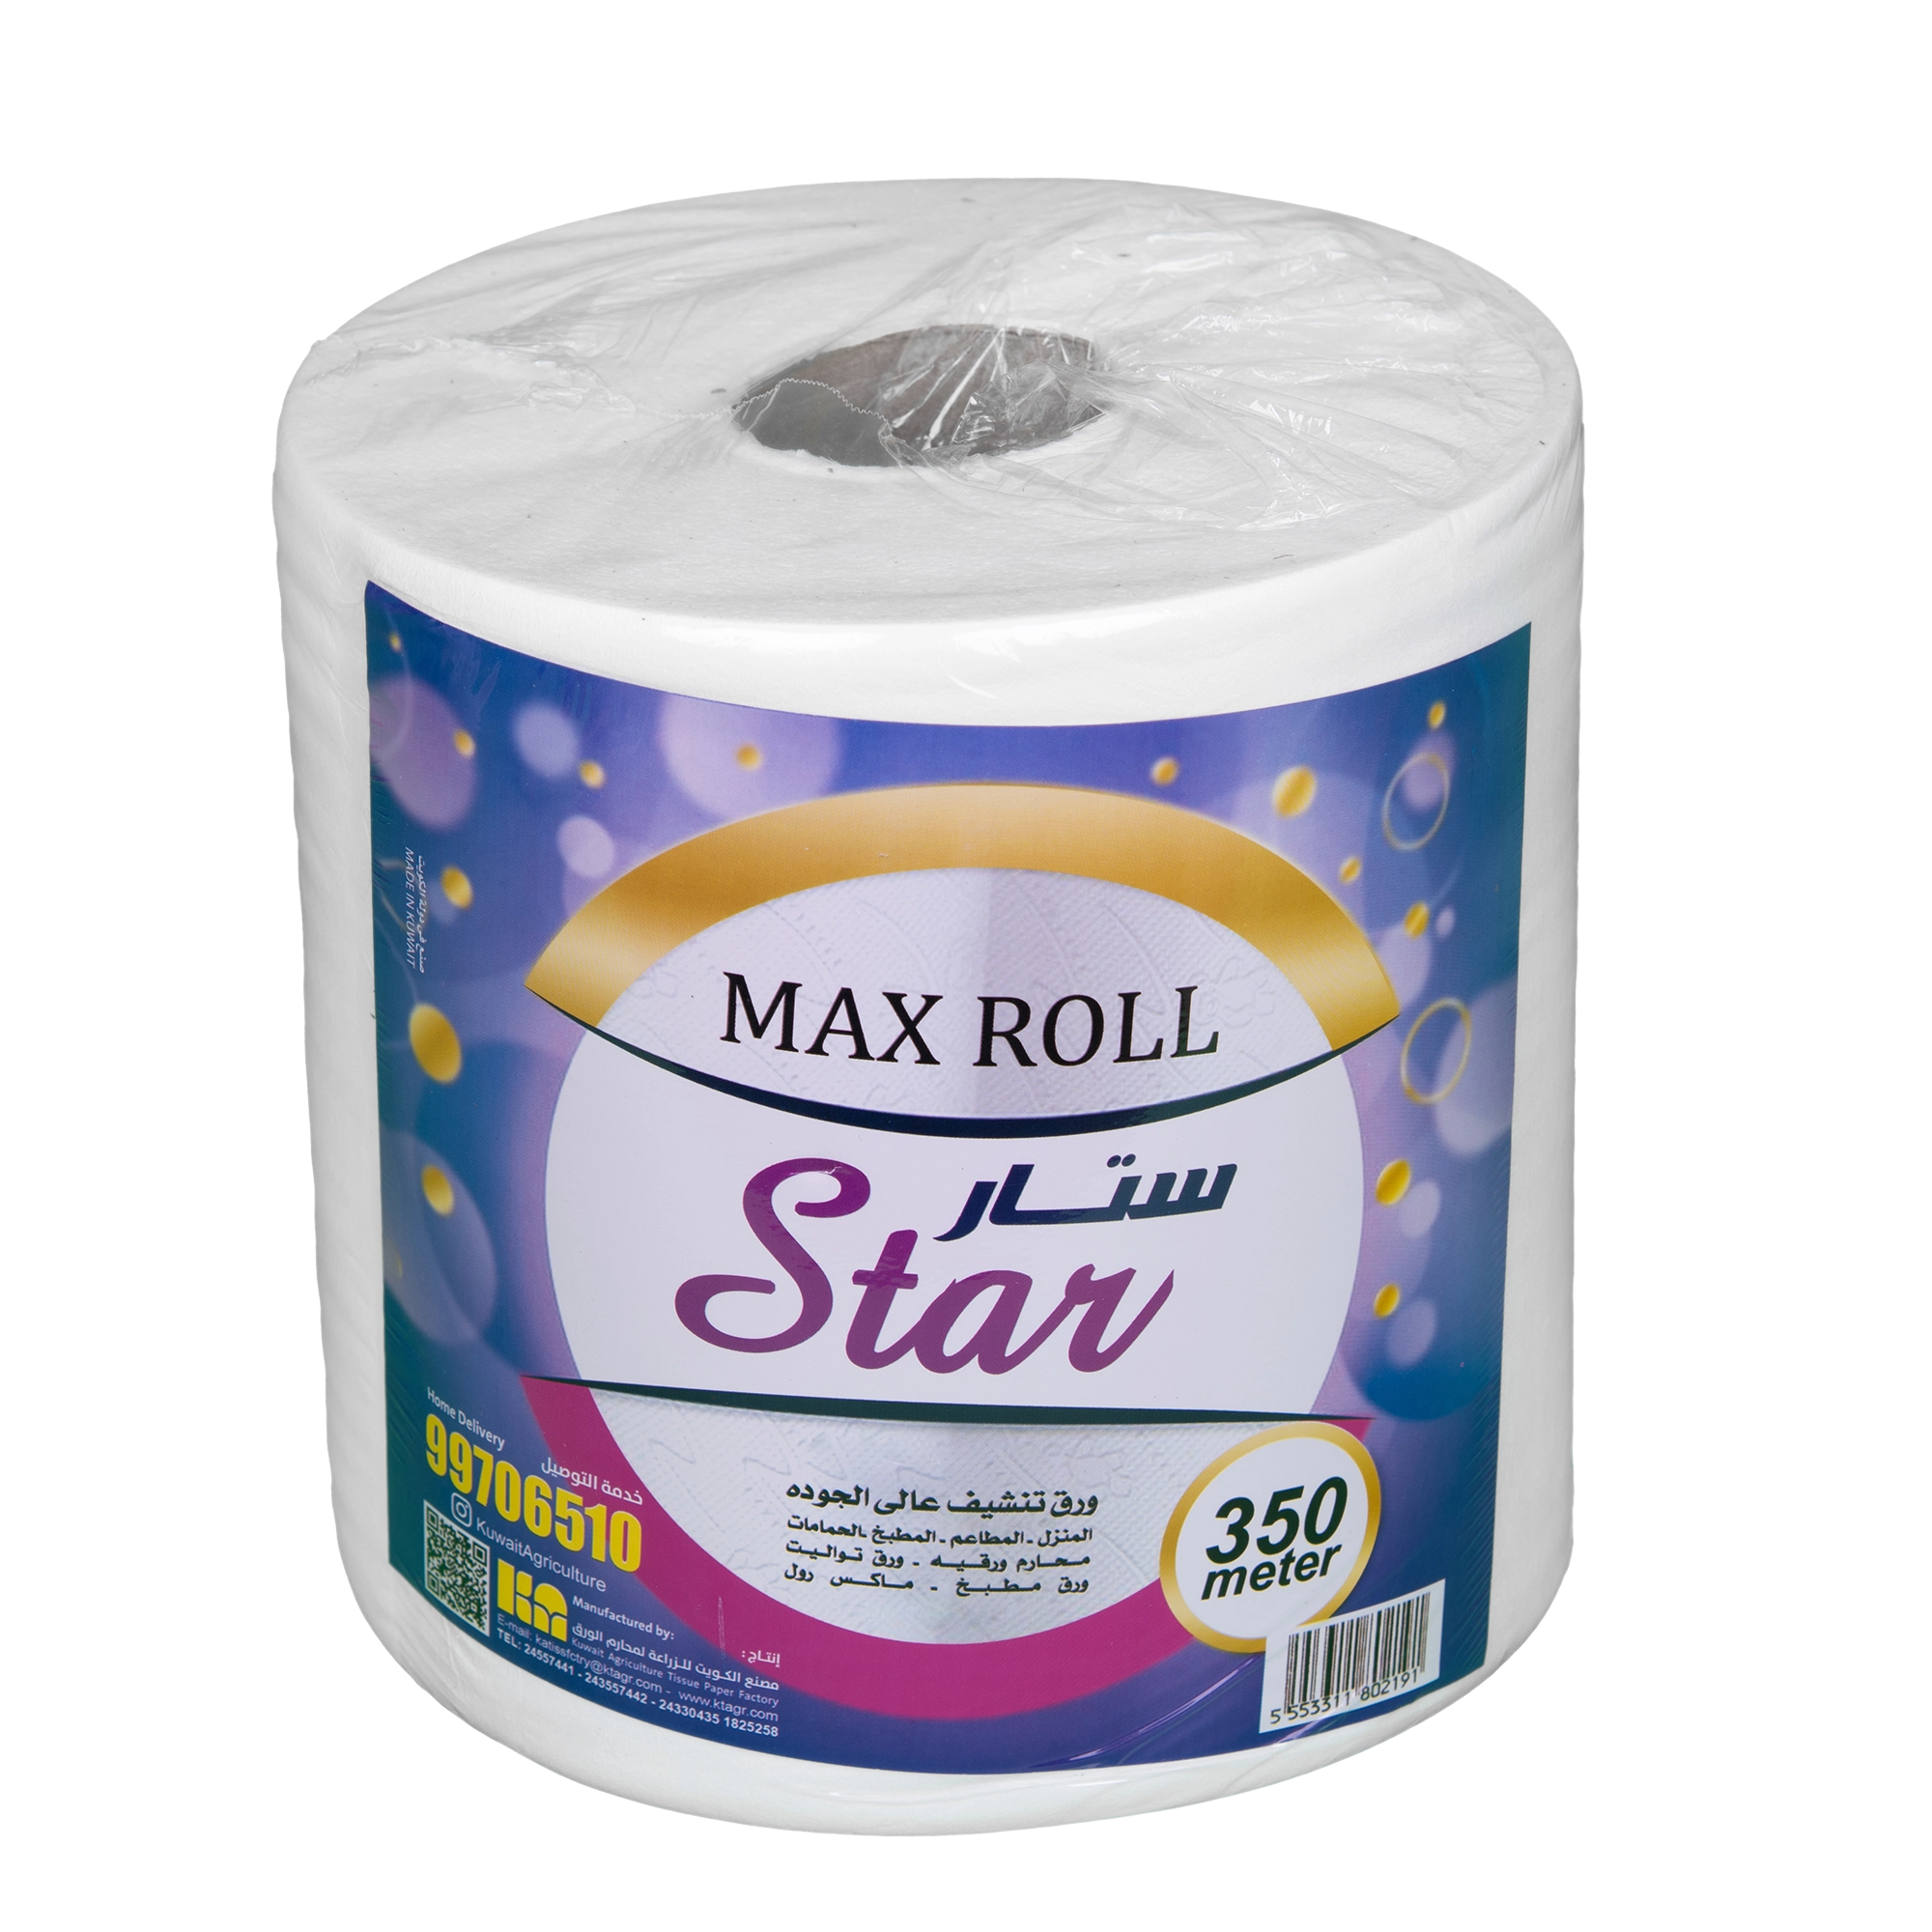 KAC -Star Maxi Roll 350 mtr